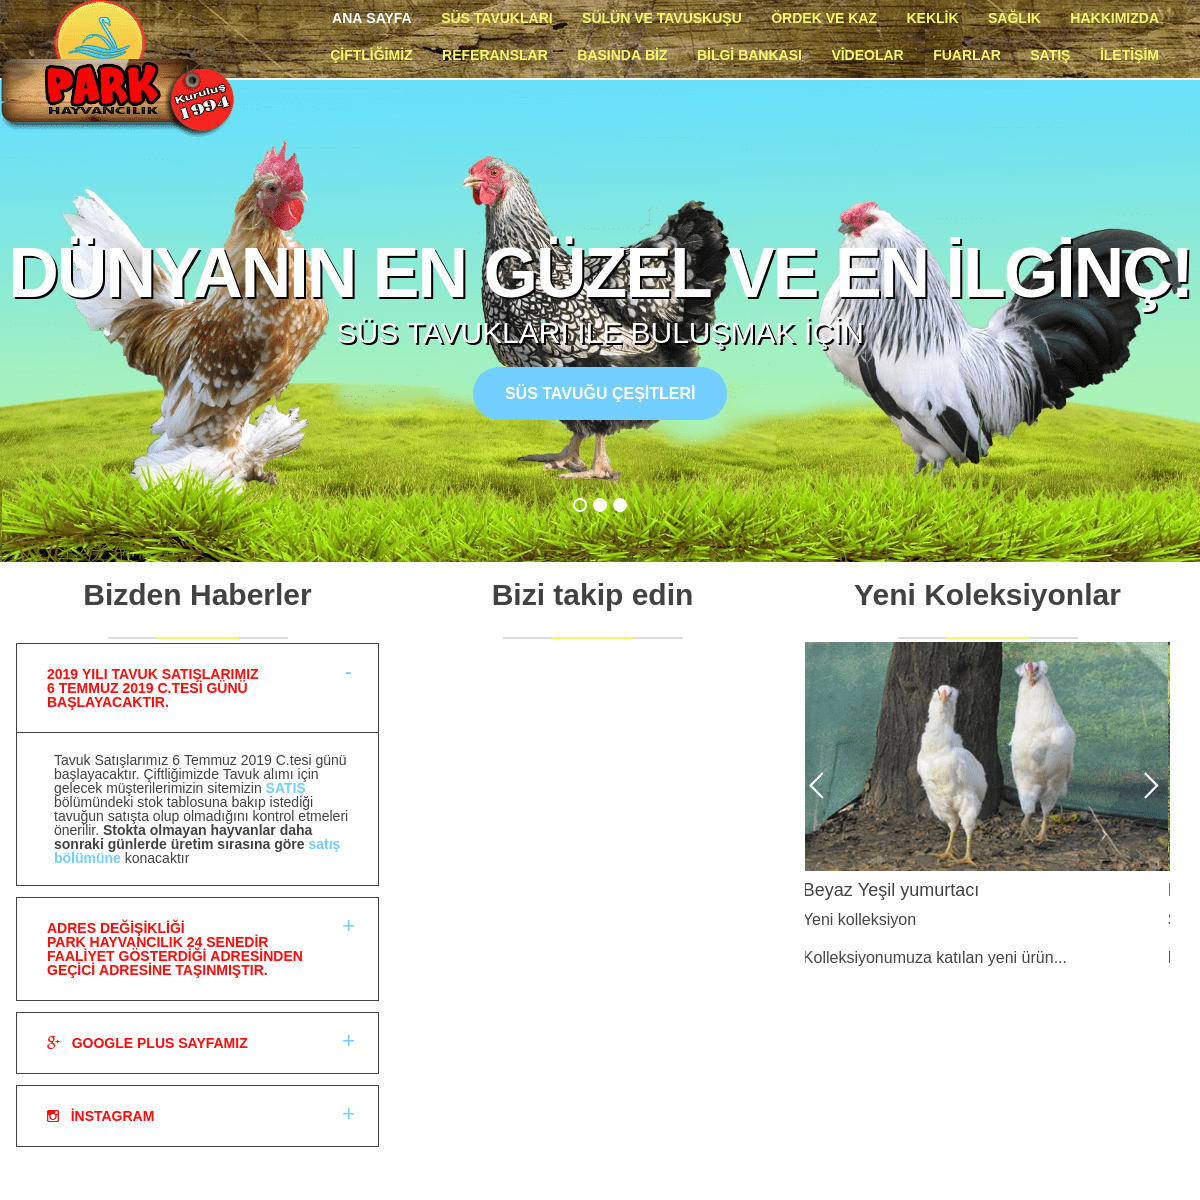 Park Hayvancılık - Süs Tavukları, Keklik, Sülün, Tavuskuşu, Ördek, Kaz, Üretim Çiftliği, Bursa - Türkiye